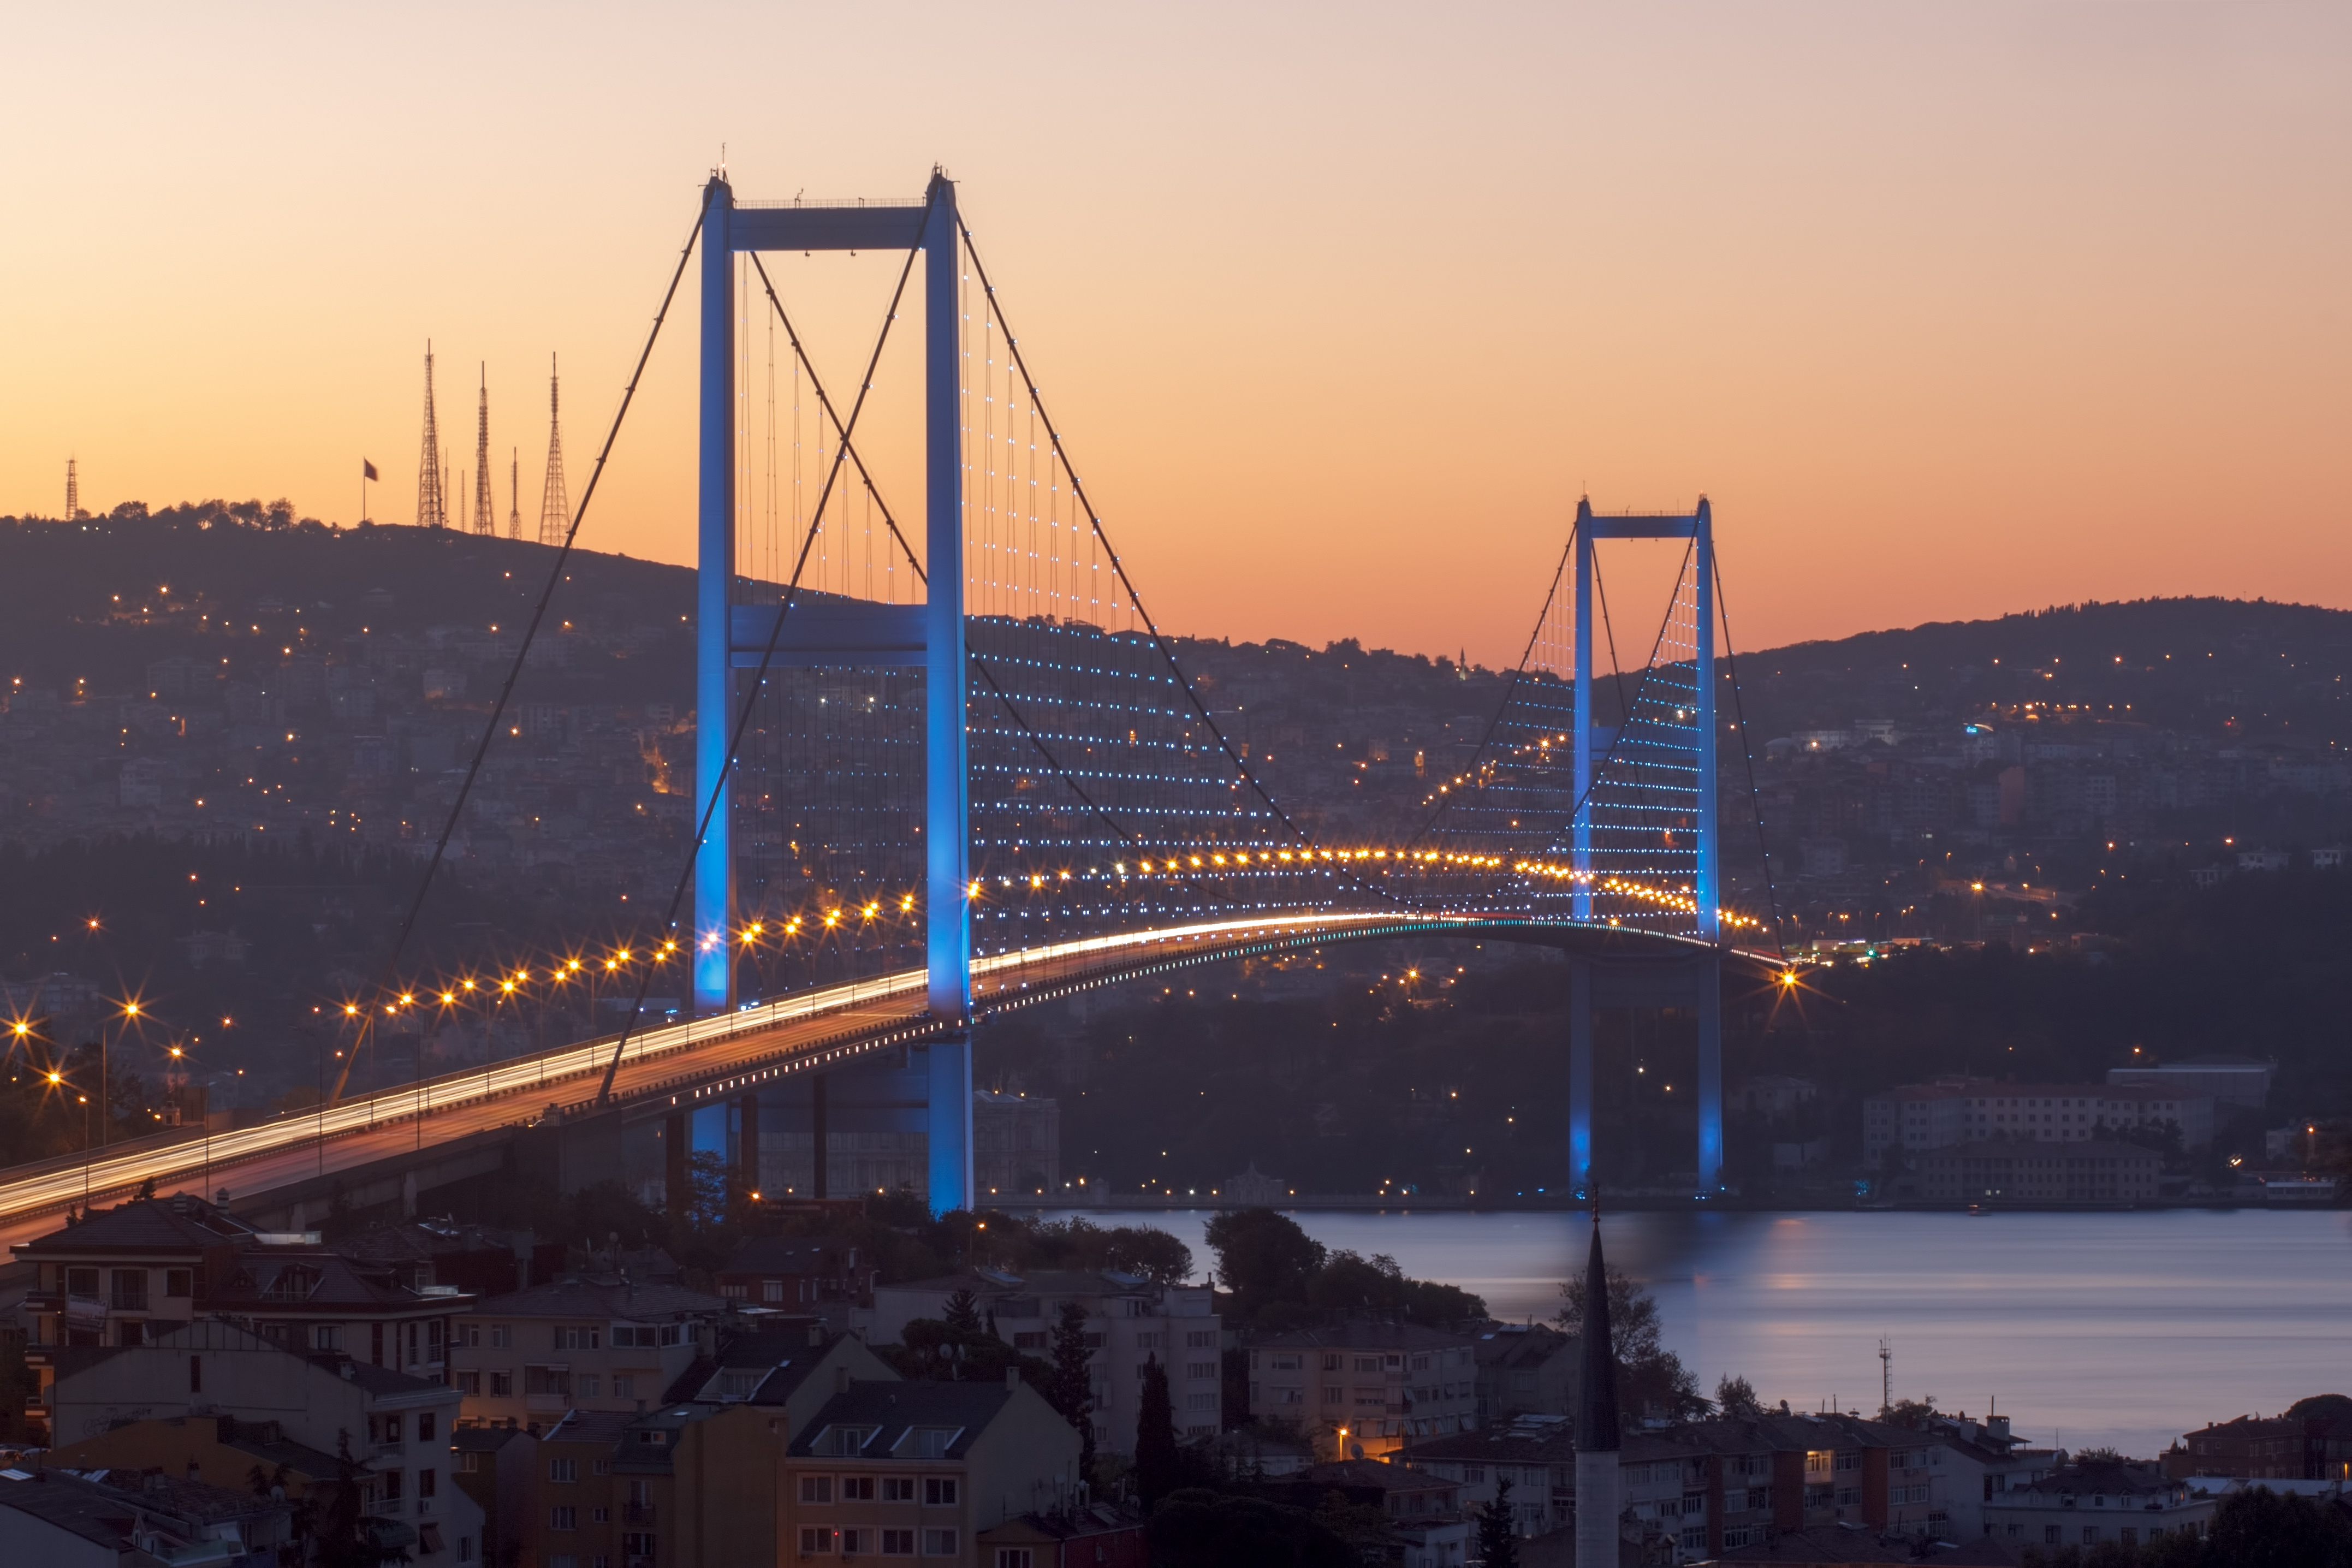 Bosphorus Bridge 4k Ultra HD Wallpaper